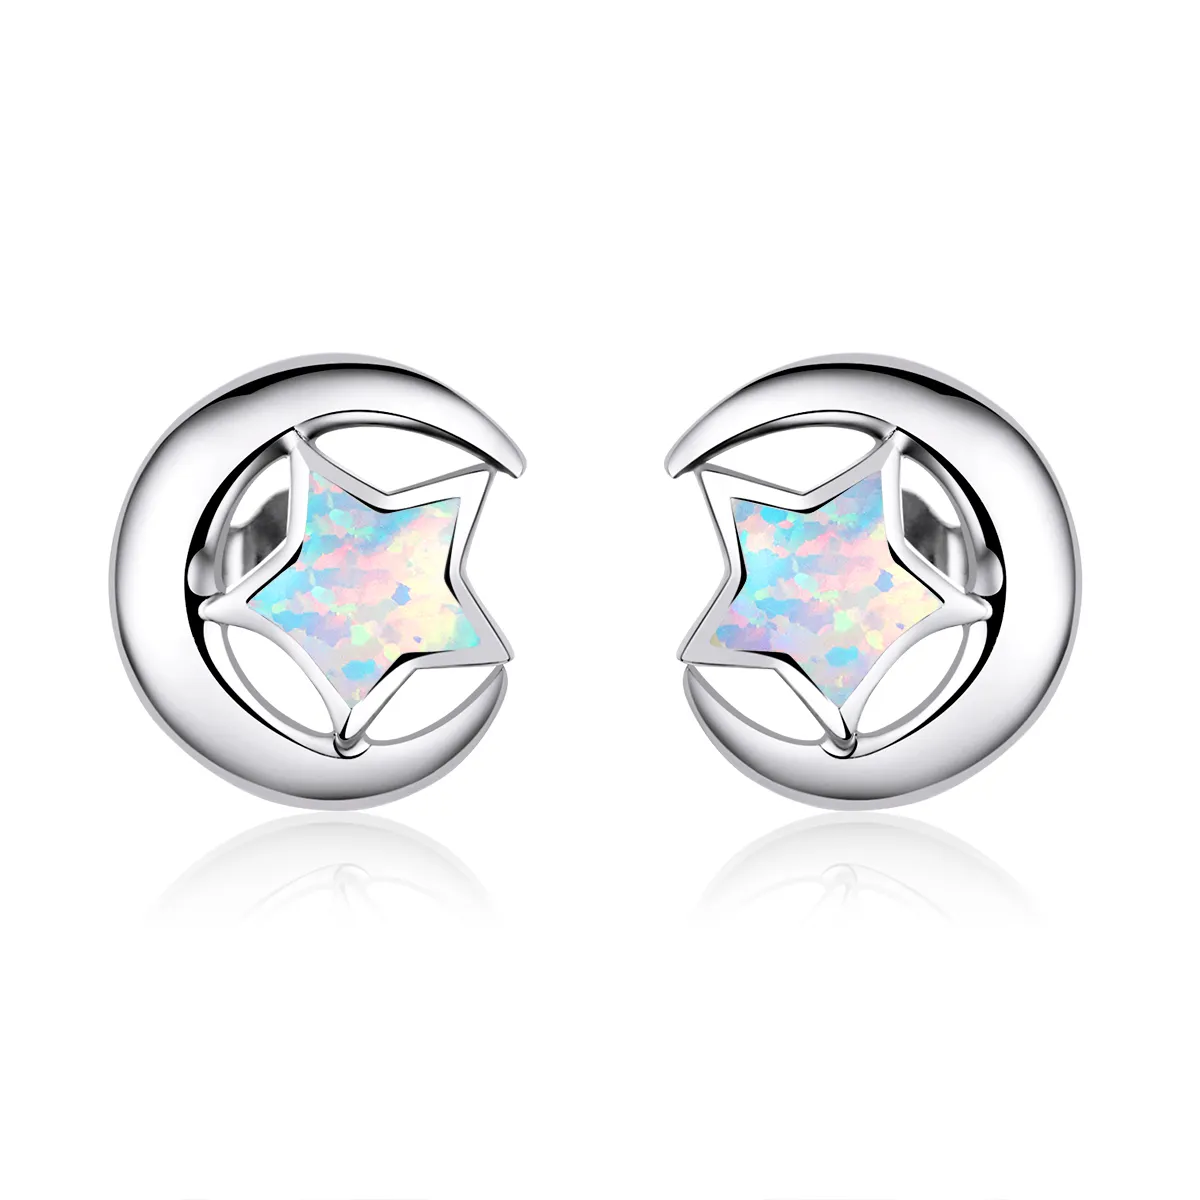 Pandora Style Opal Moon Stud Earrings - SCE816-A